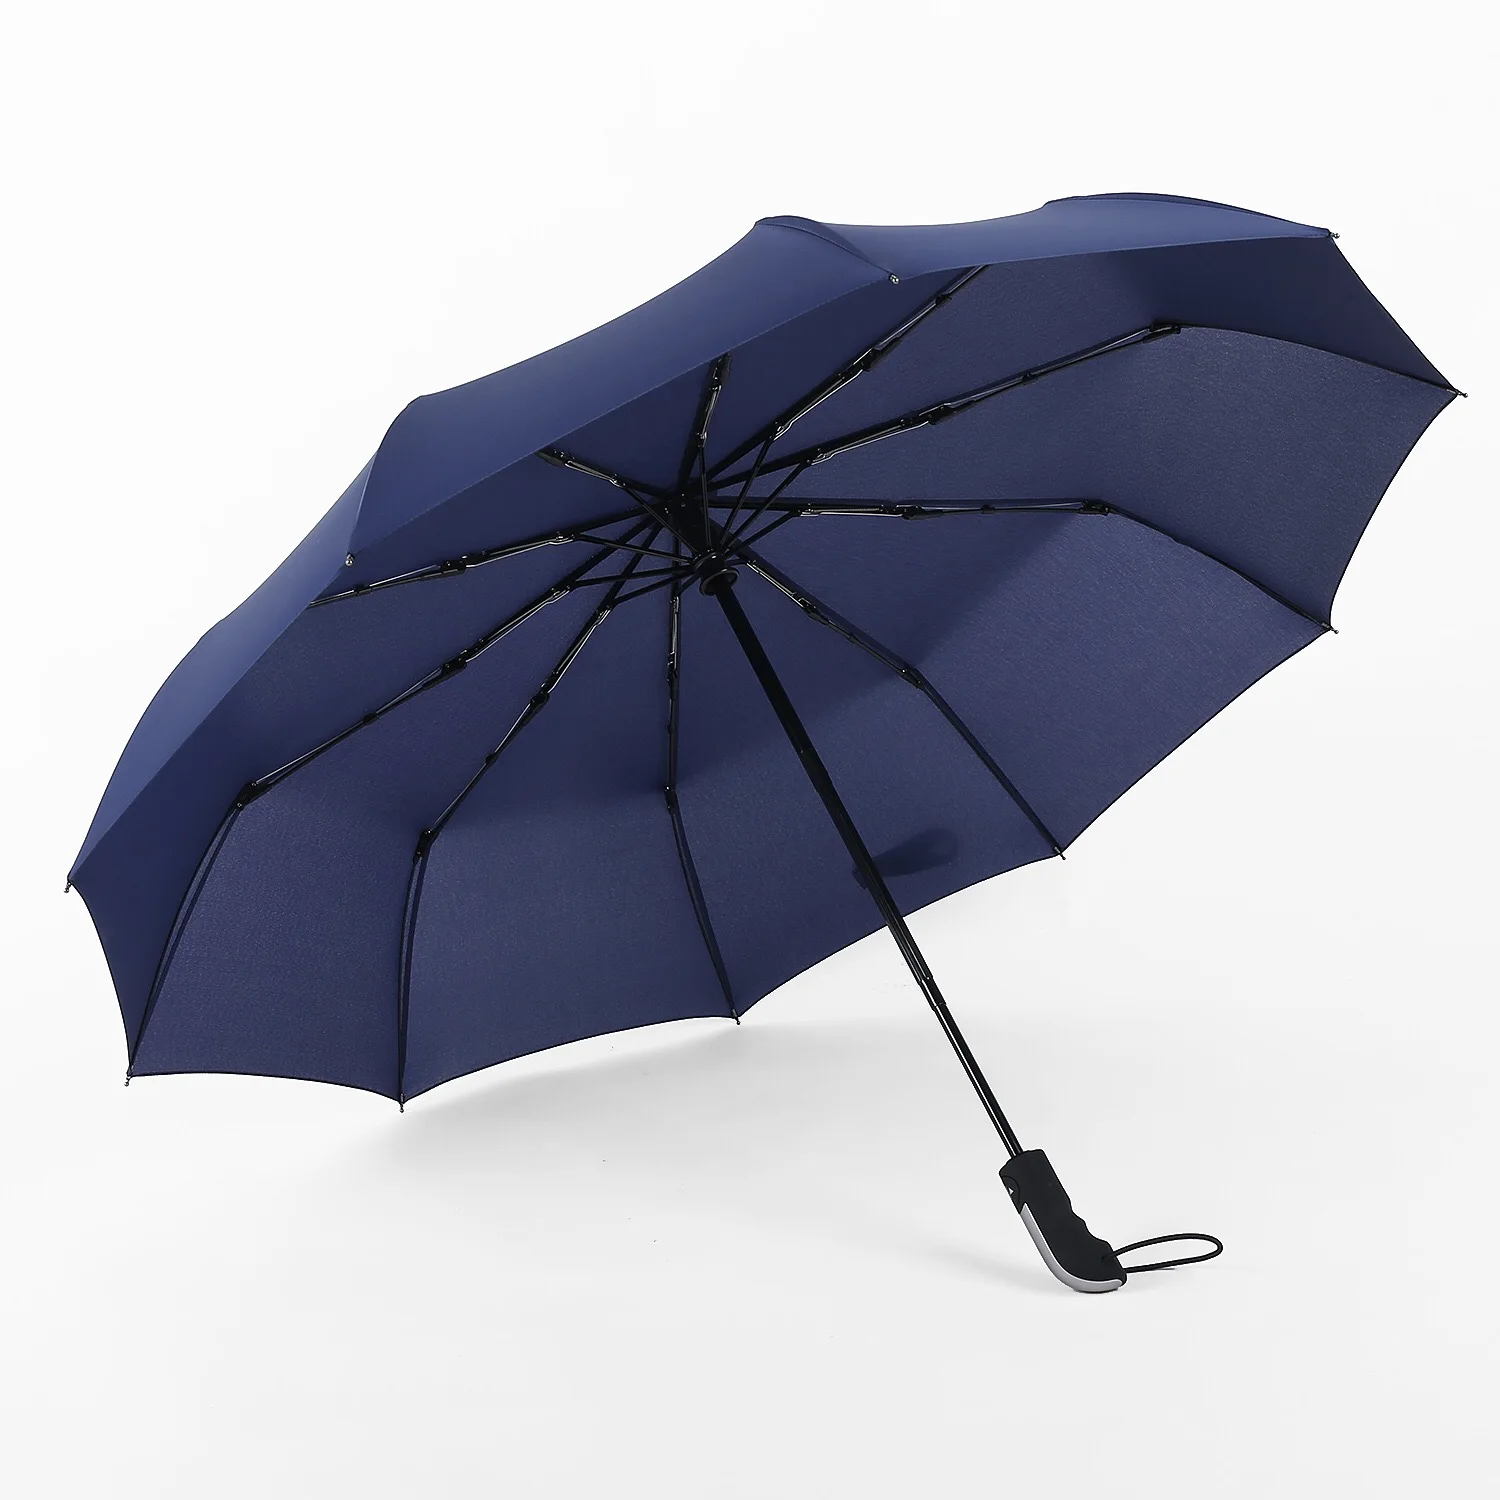 Купить прочный зонтик. Umbr-8003-Green зонт женский.. Складной мини-зонт темно-синий | Ardeco Design. Зонт складной Monsoon оранжевый 14518. Автоматический складной зонт Mercedes-Benz Pocket Umbrella, Black SM, fkhl170238mb.